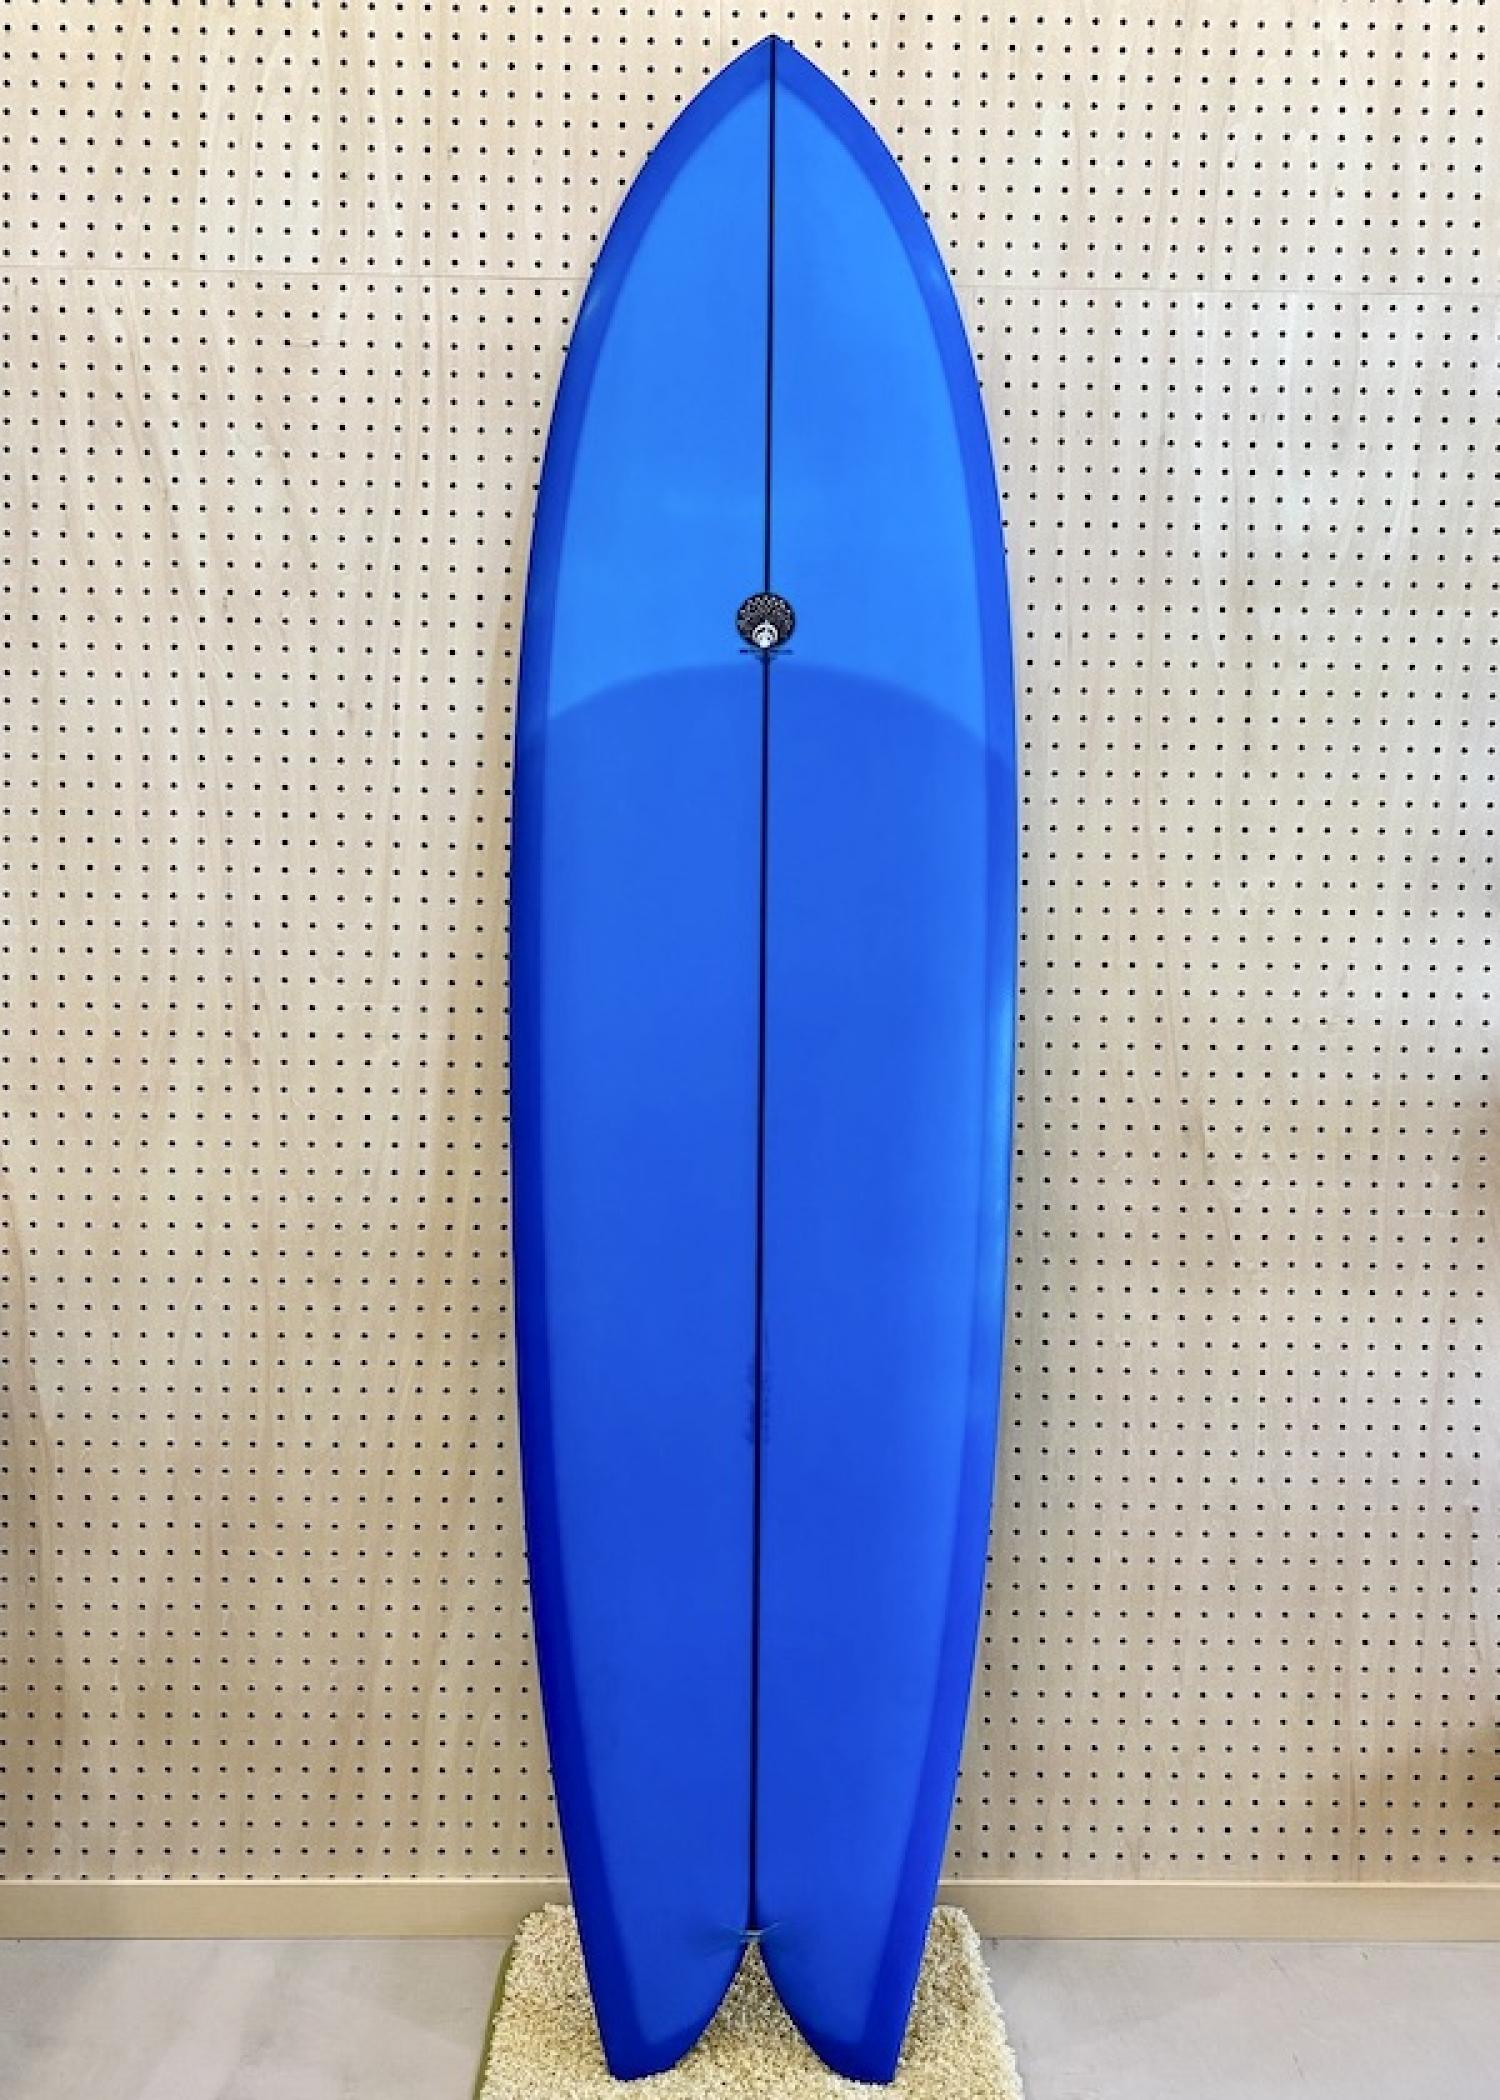 DRIFTER 6.10 Michael Miller Surfboards